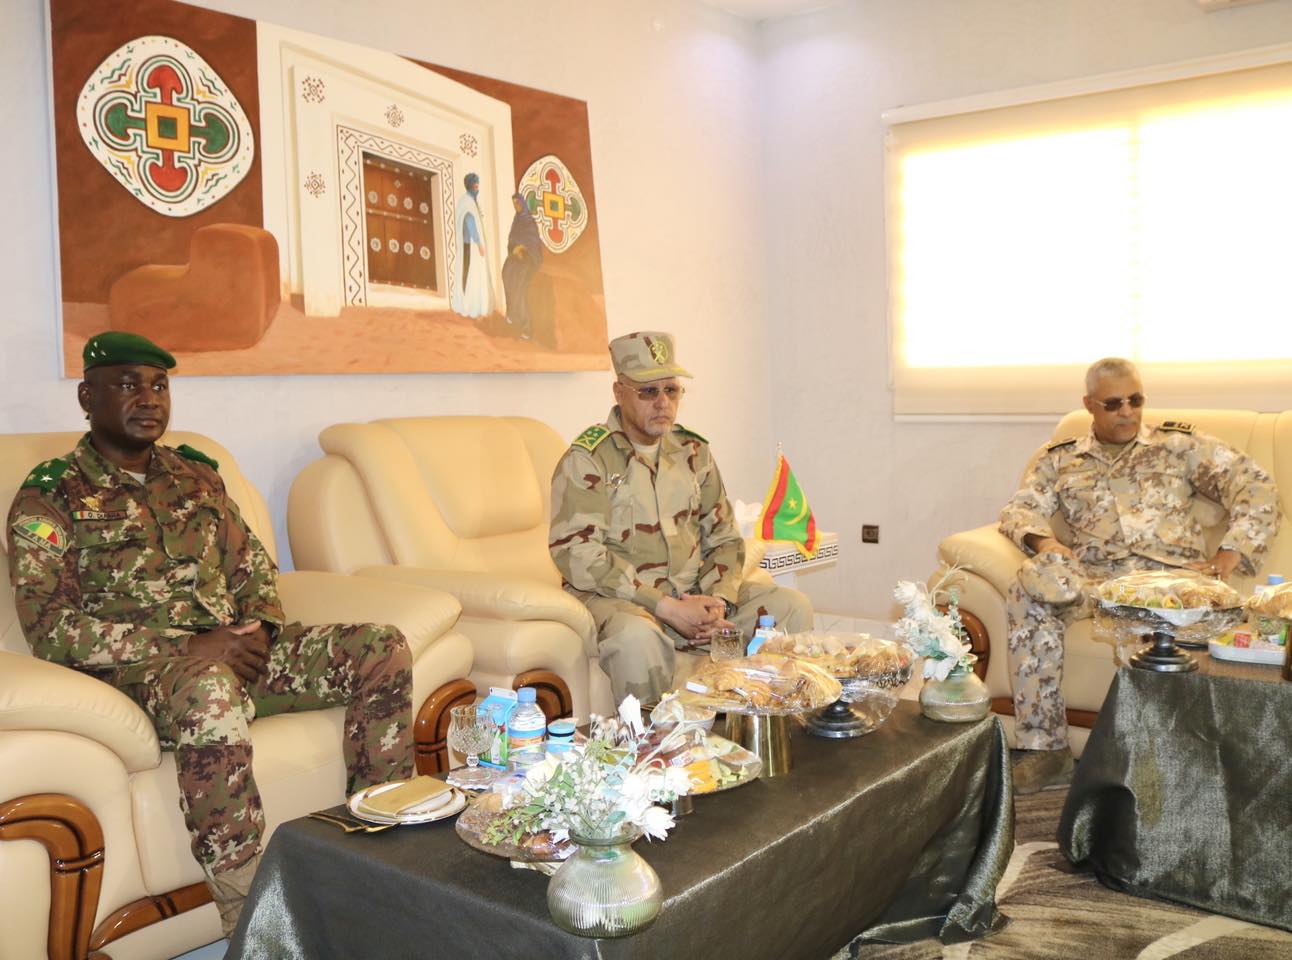 Après les incidents intervenus à la frontière des deux pays, rencontre entre les chefs d’état-major des armées mauritanienne et malienne à Nouakchott